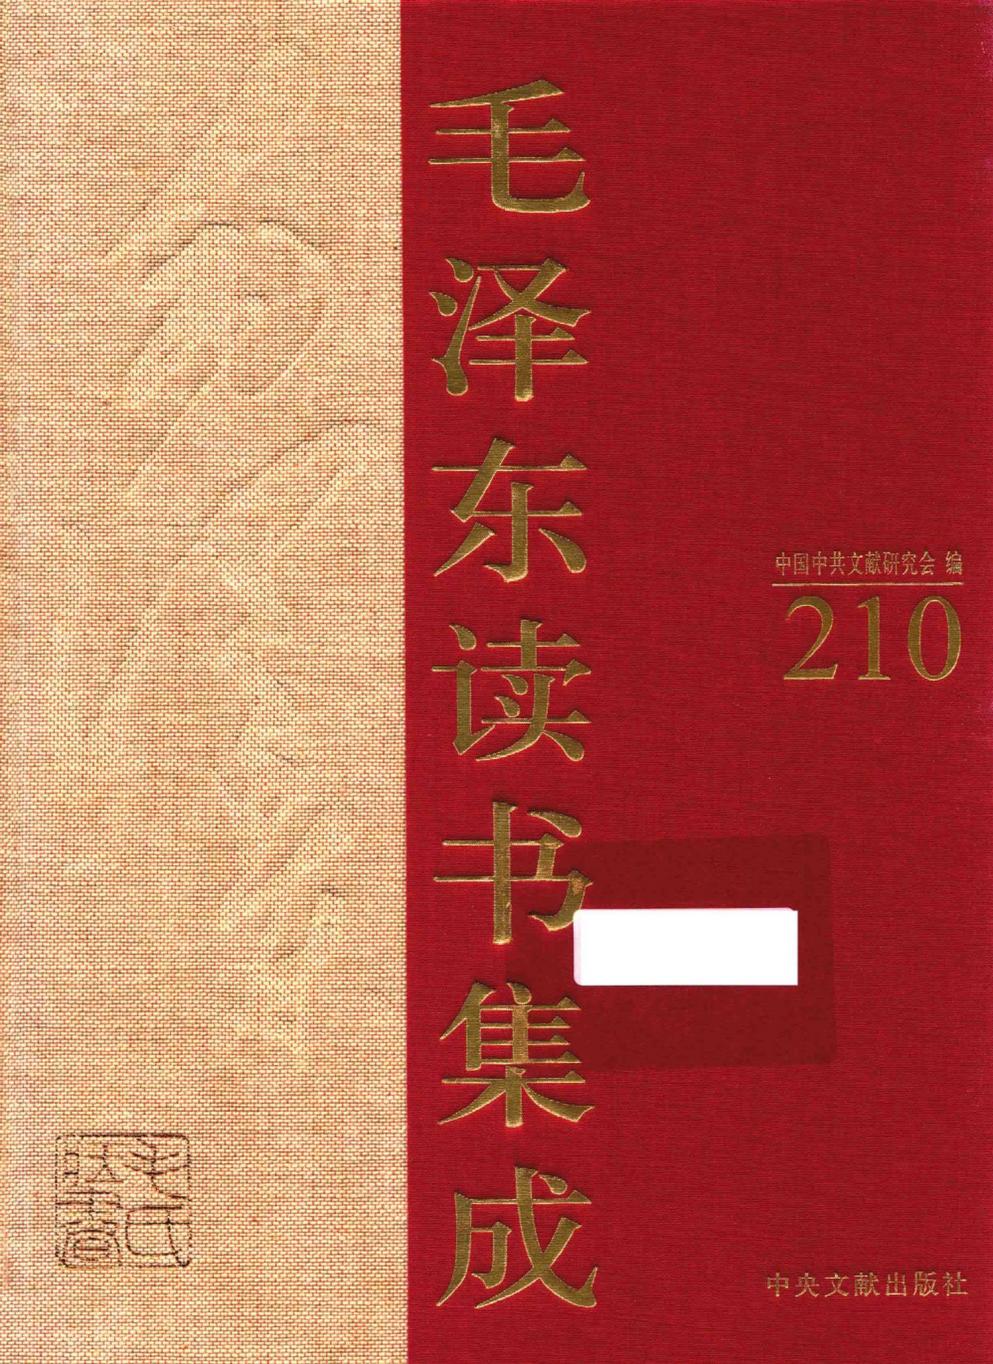 毛泽东读书集成（第210卷）-1